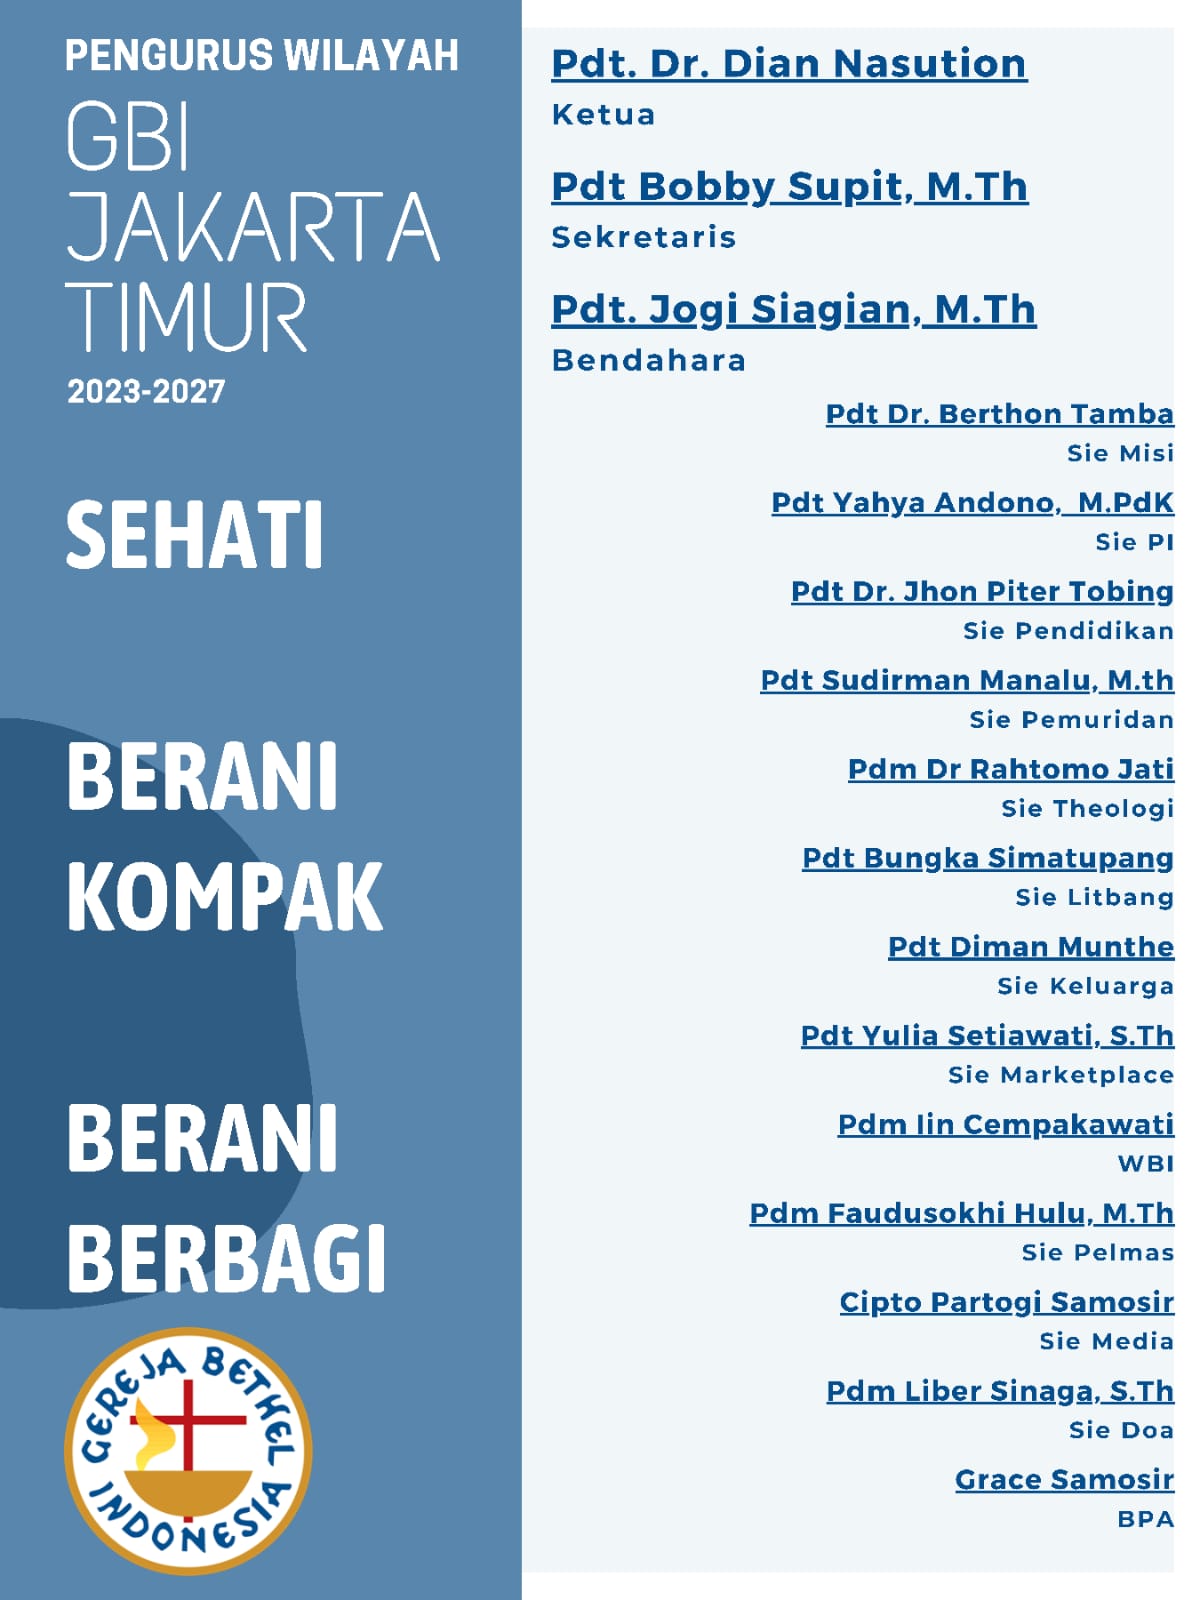 Pelantikan Pengurus Perwil GBI Jakarta Timur 2023-2027